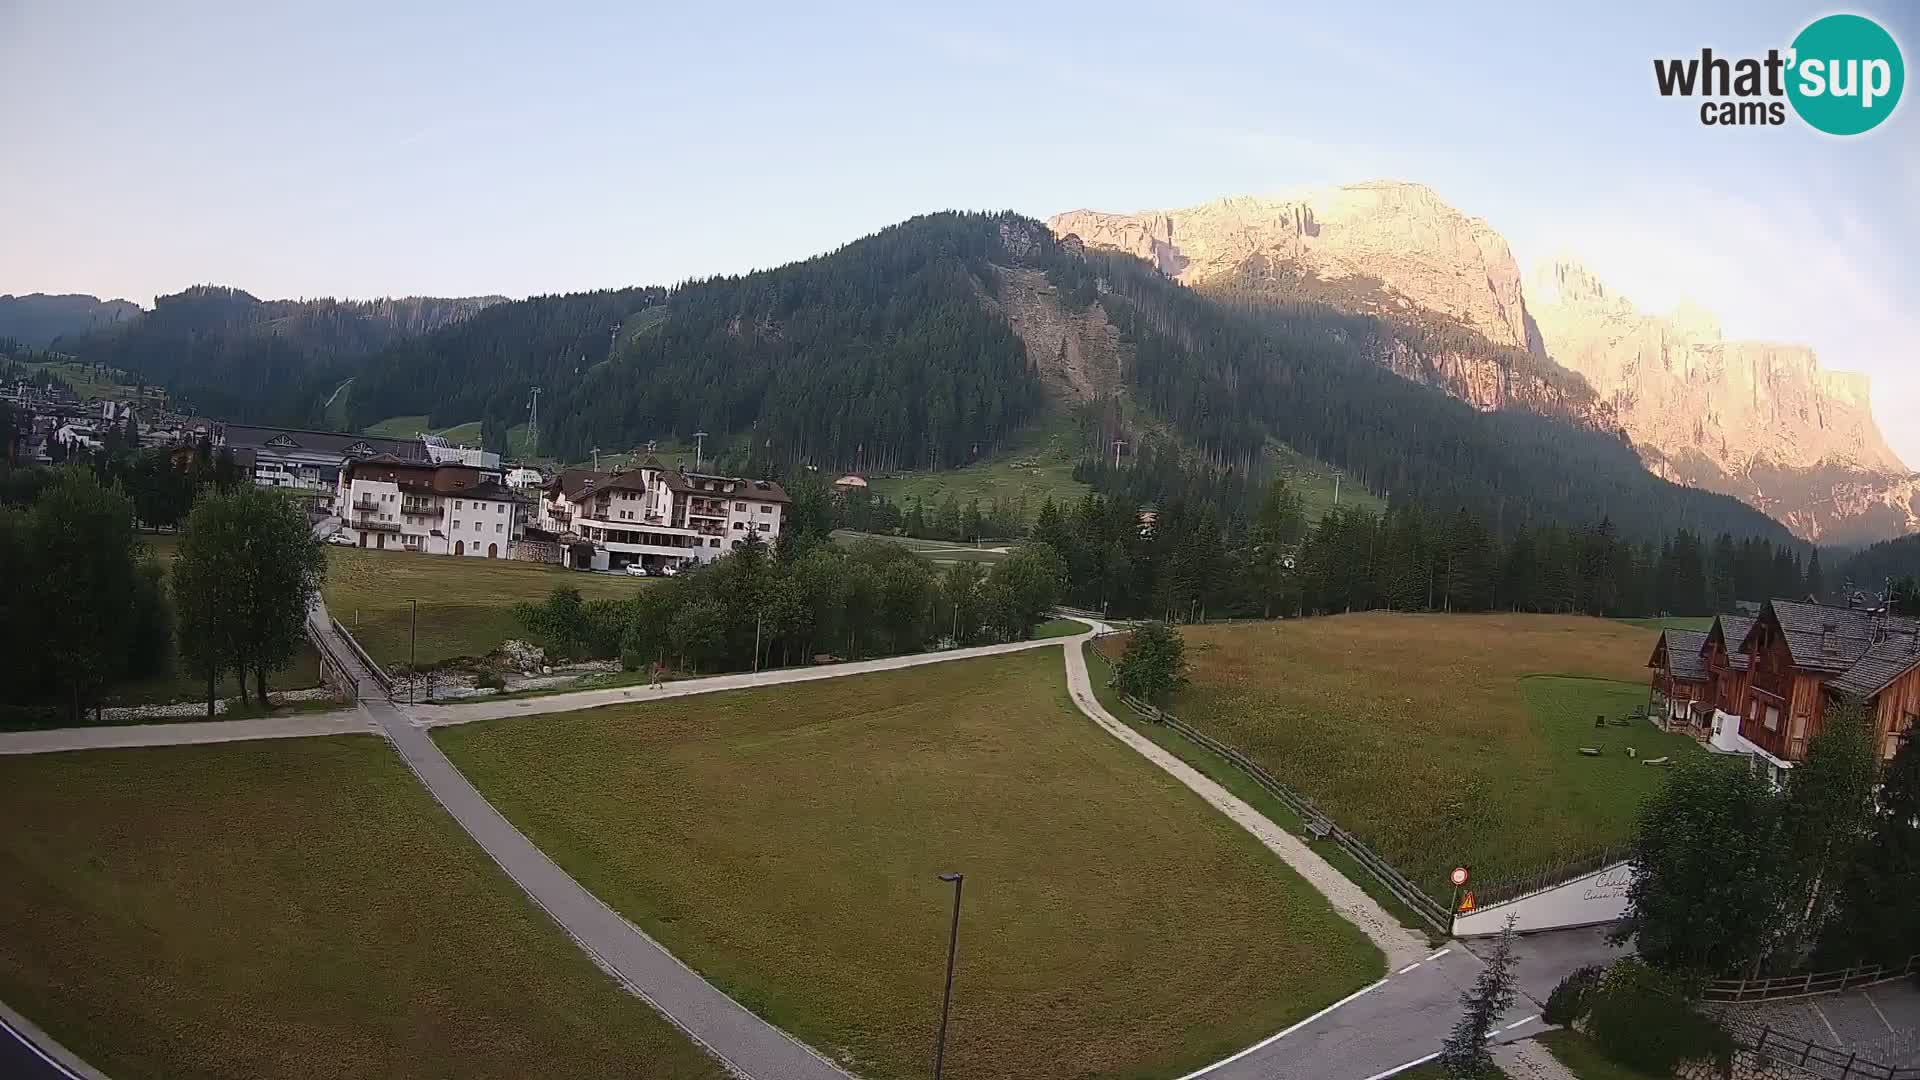 Kamera Corvara: Izjemen pogled na vrhove gorovja Sella v Dolomitih